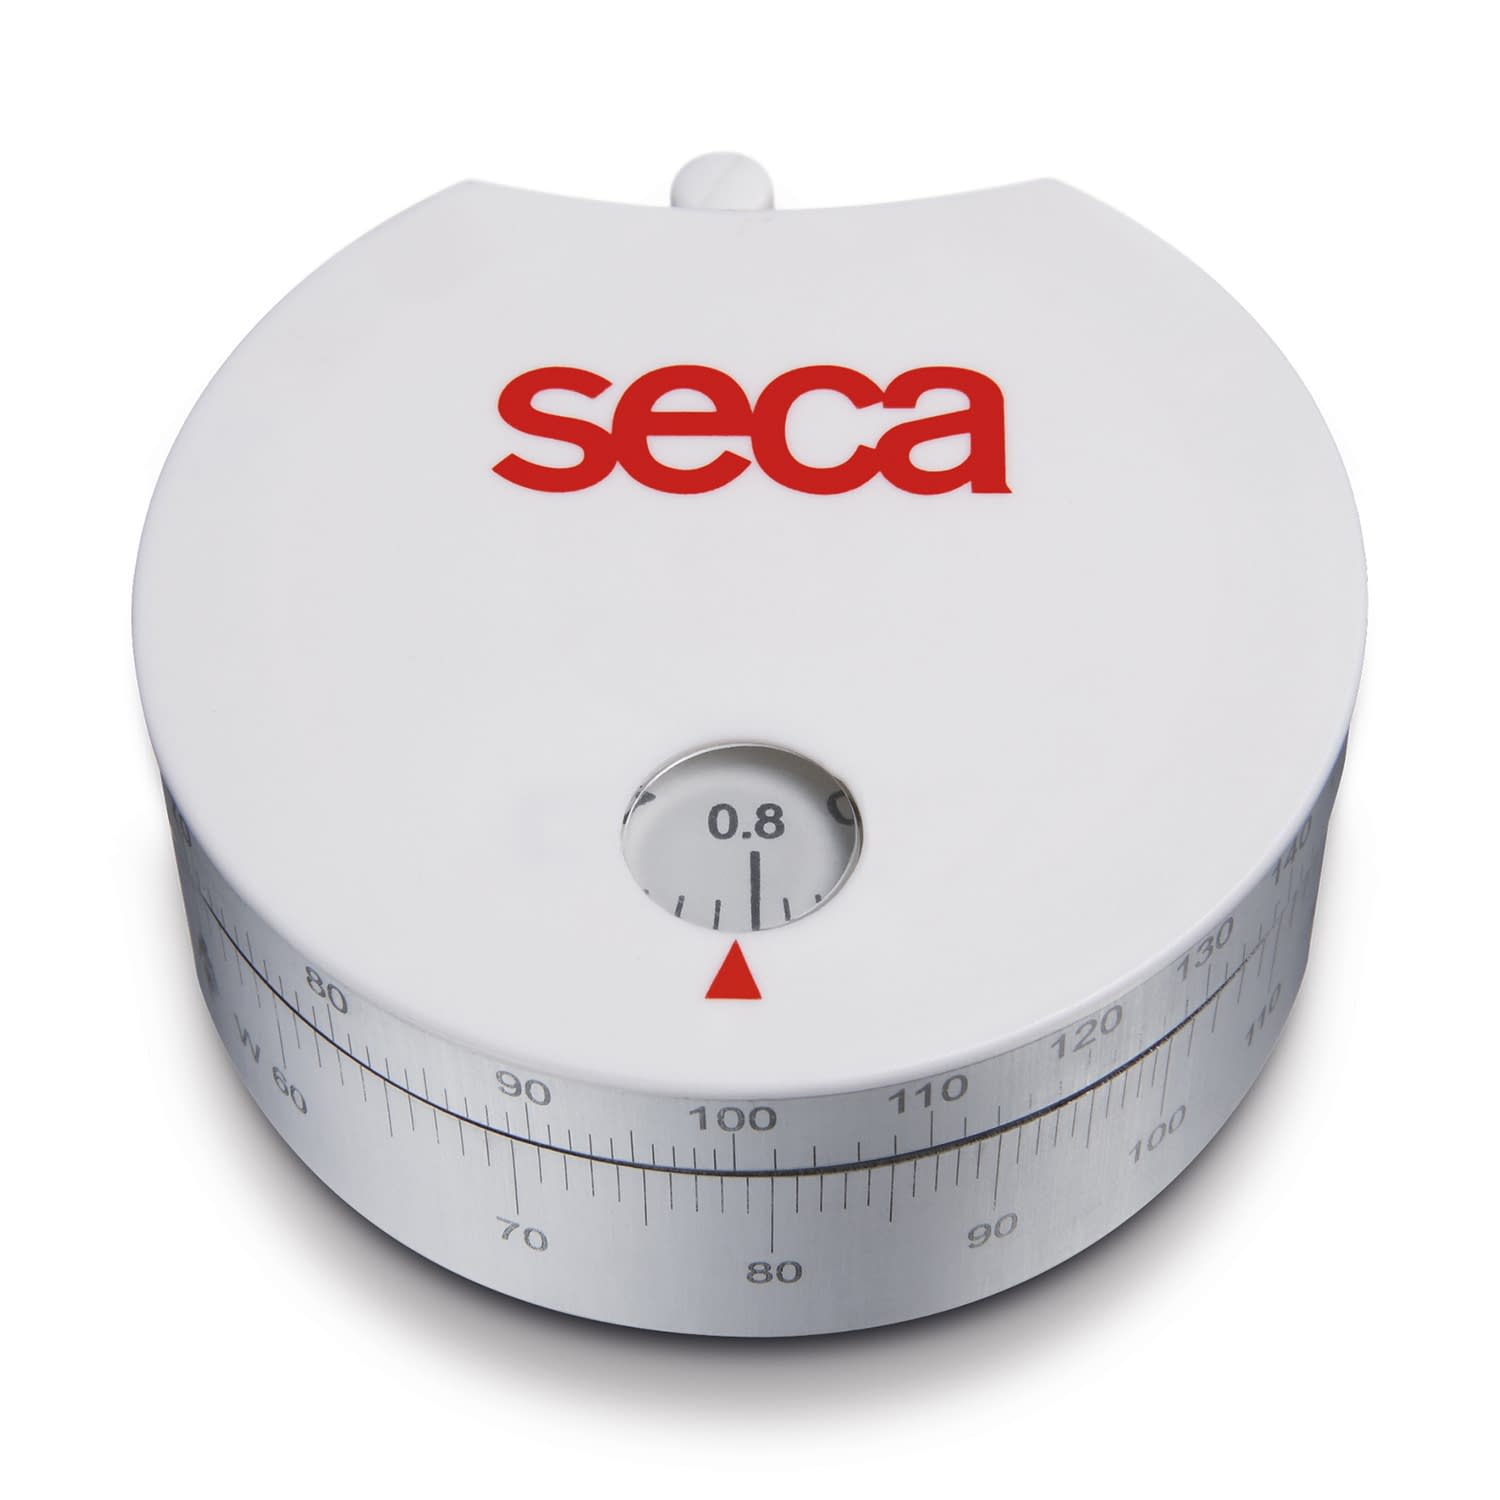 ウエストヒップ比計測用周囲測定テープ SECA203 周囲測定テープ 25-3196-00【seca】(seca 203)(25-3196-00)